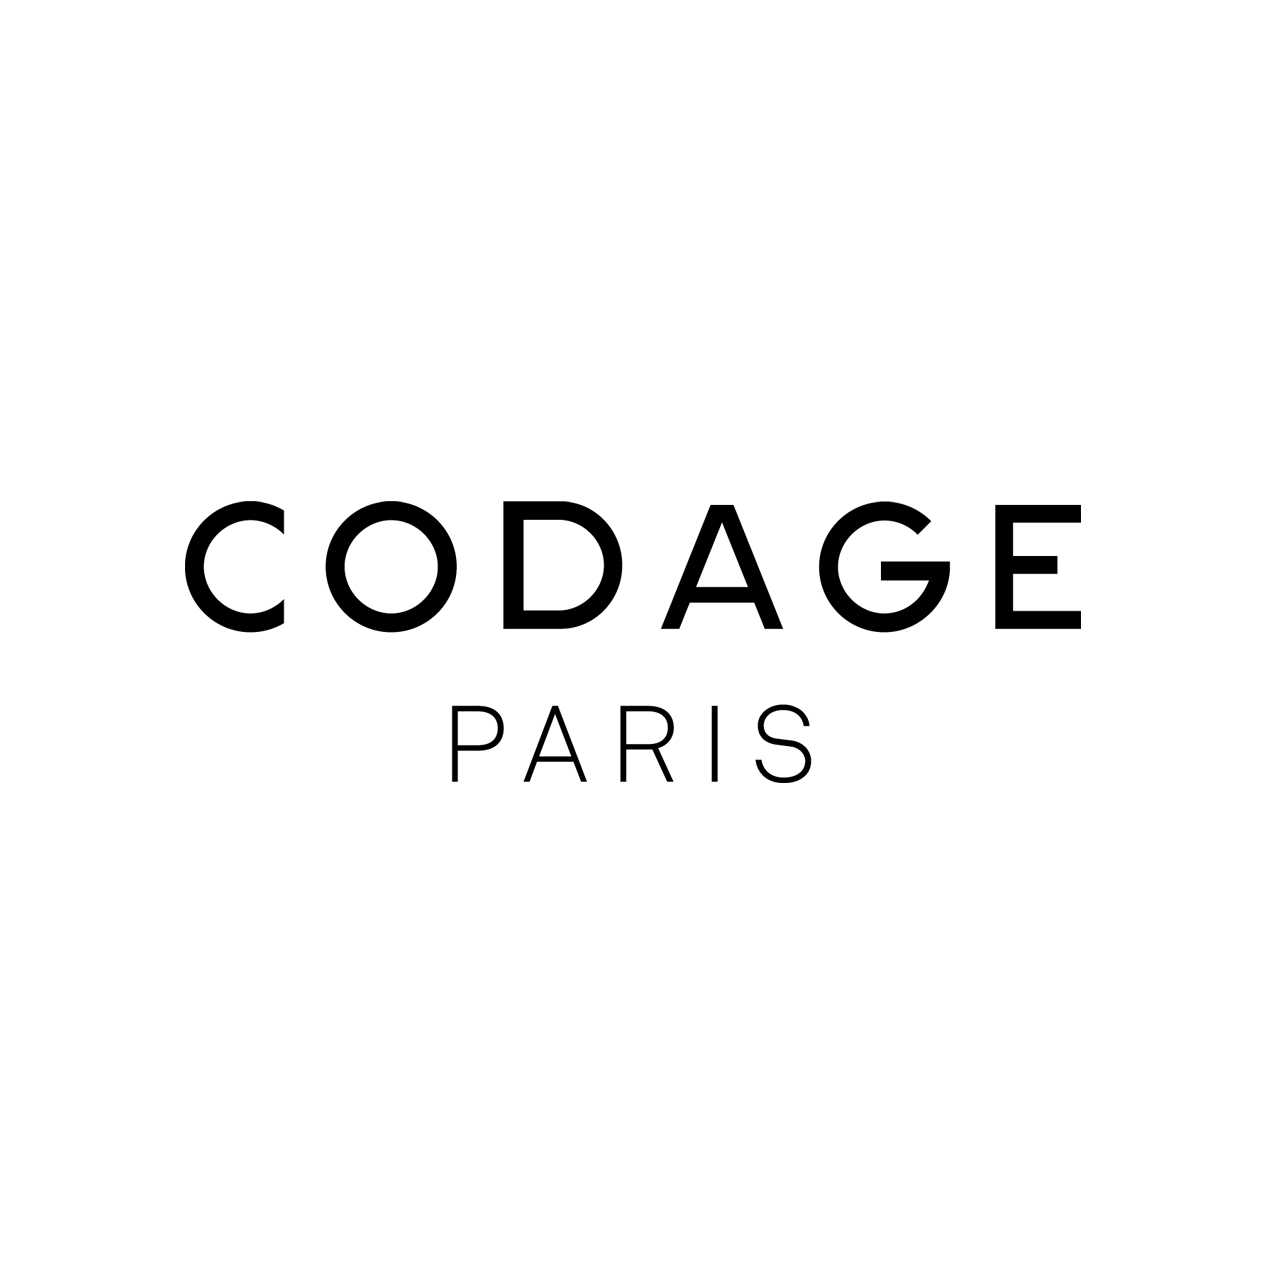 CODAGE Paris